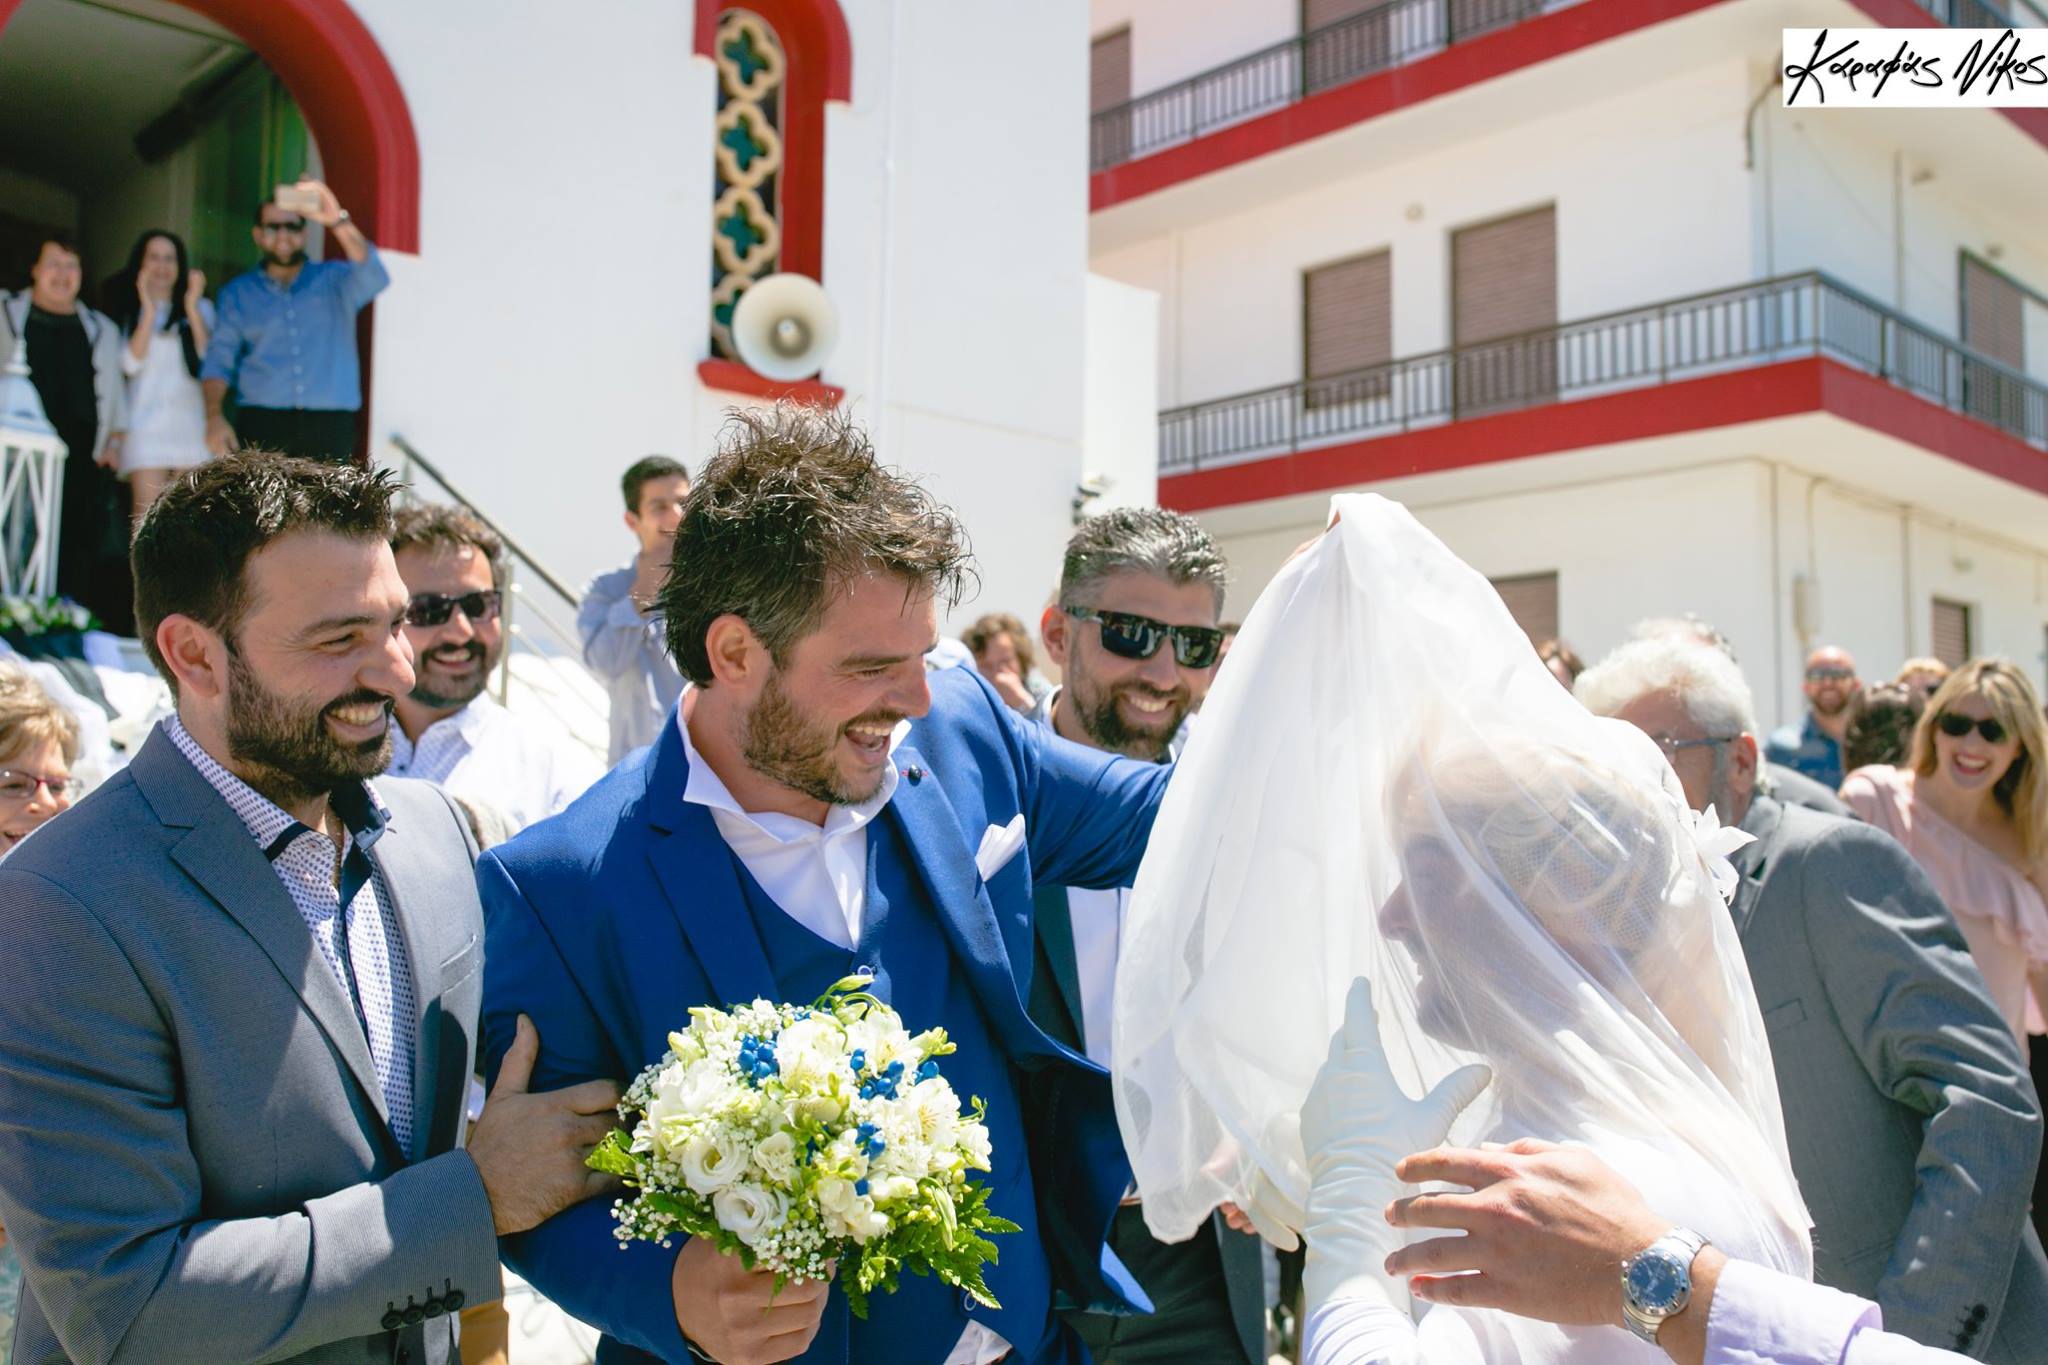 Ένας ξεχωριστός γάμος στα Χανιά – Φίλος του γαμπρού ντύθηκε νύφη και επιχείρησε να κλέψει το γαμπρό (video + φωτο)